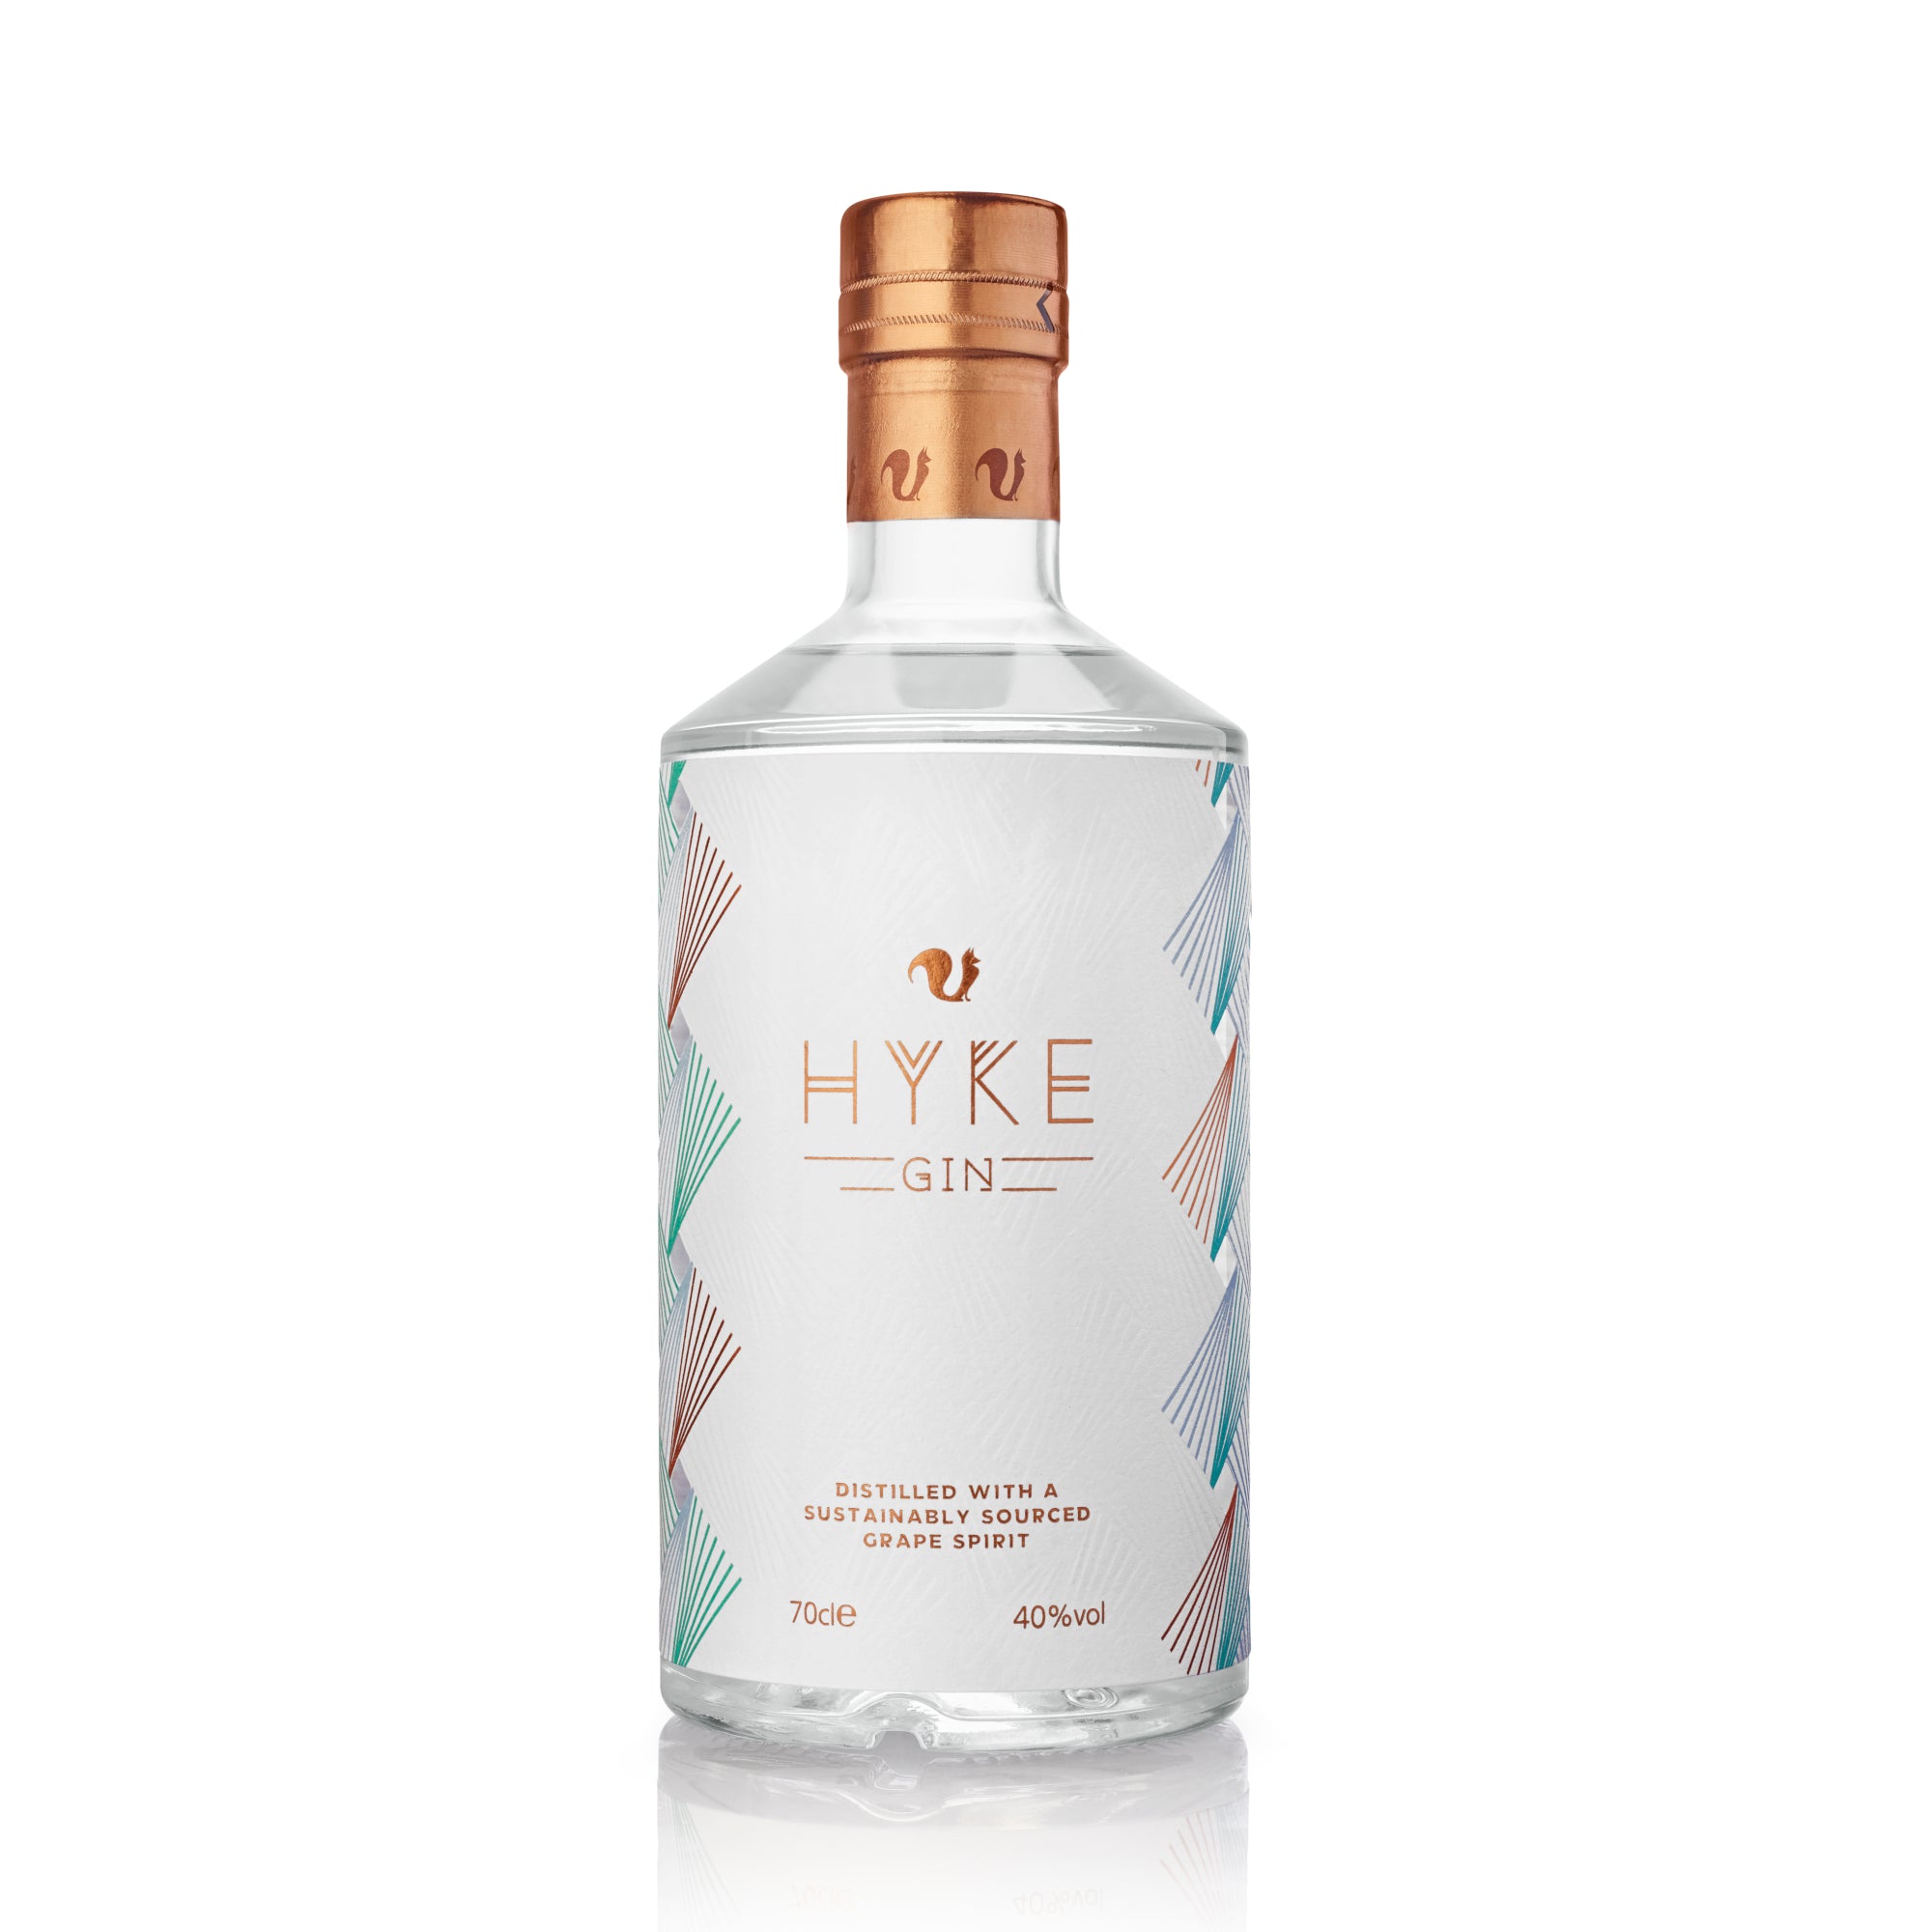 Buy HYKE Gin Gin Online | The Spirit Co | Gin